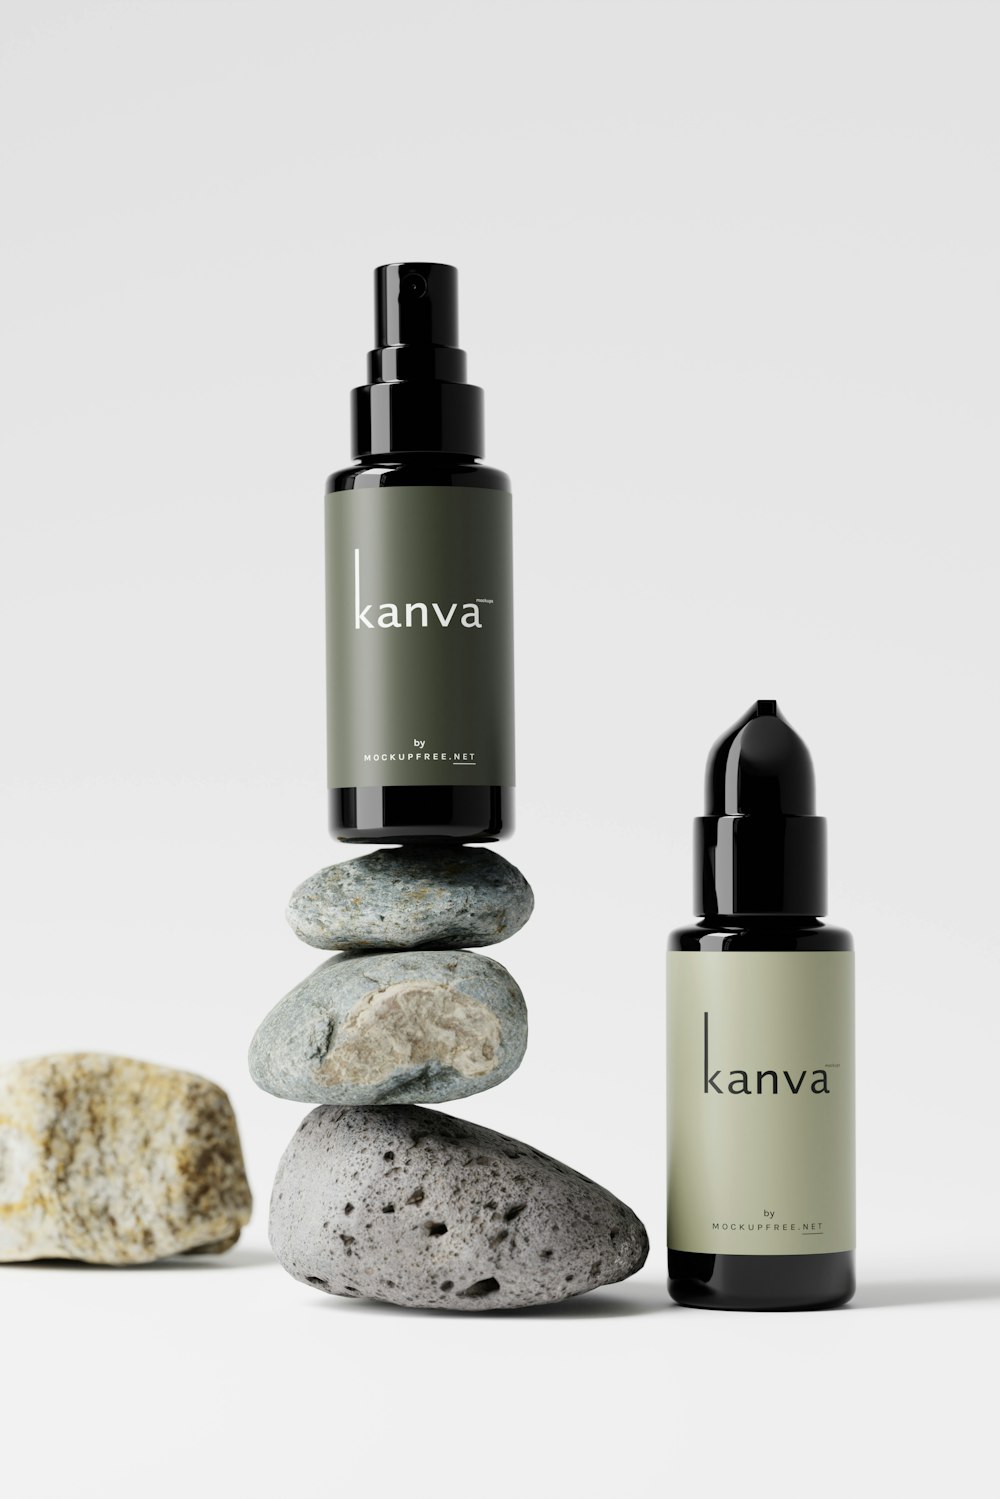 a bottle of kanva next to some rocks